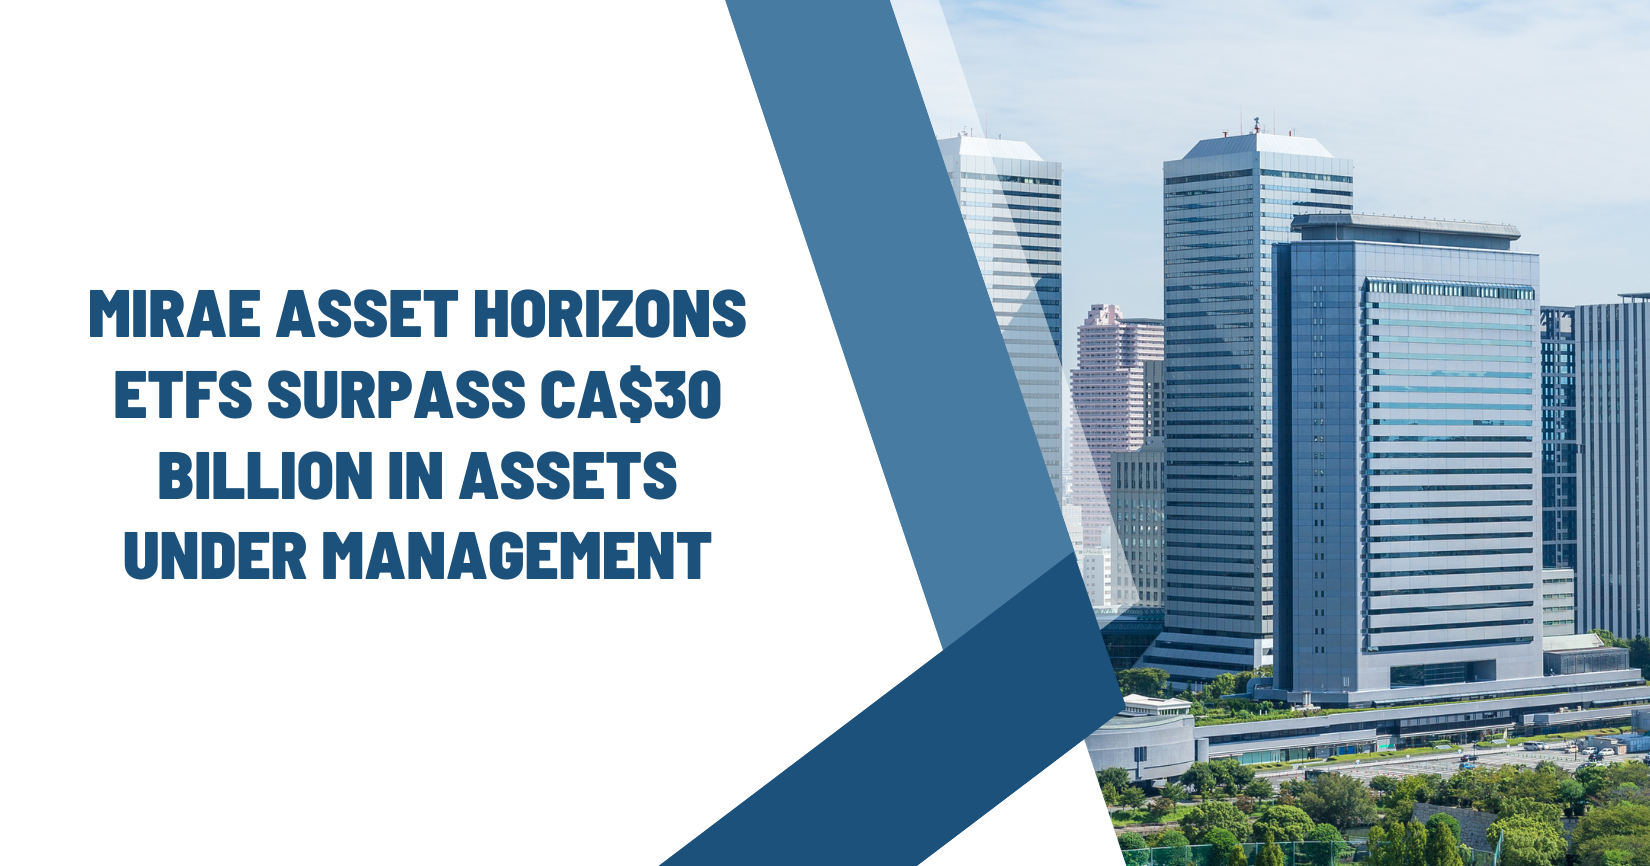 Mirae Asset Horizons ETFs Surpass CA$30 Billion in Assets Under Management